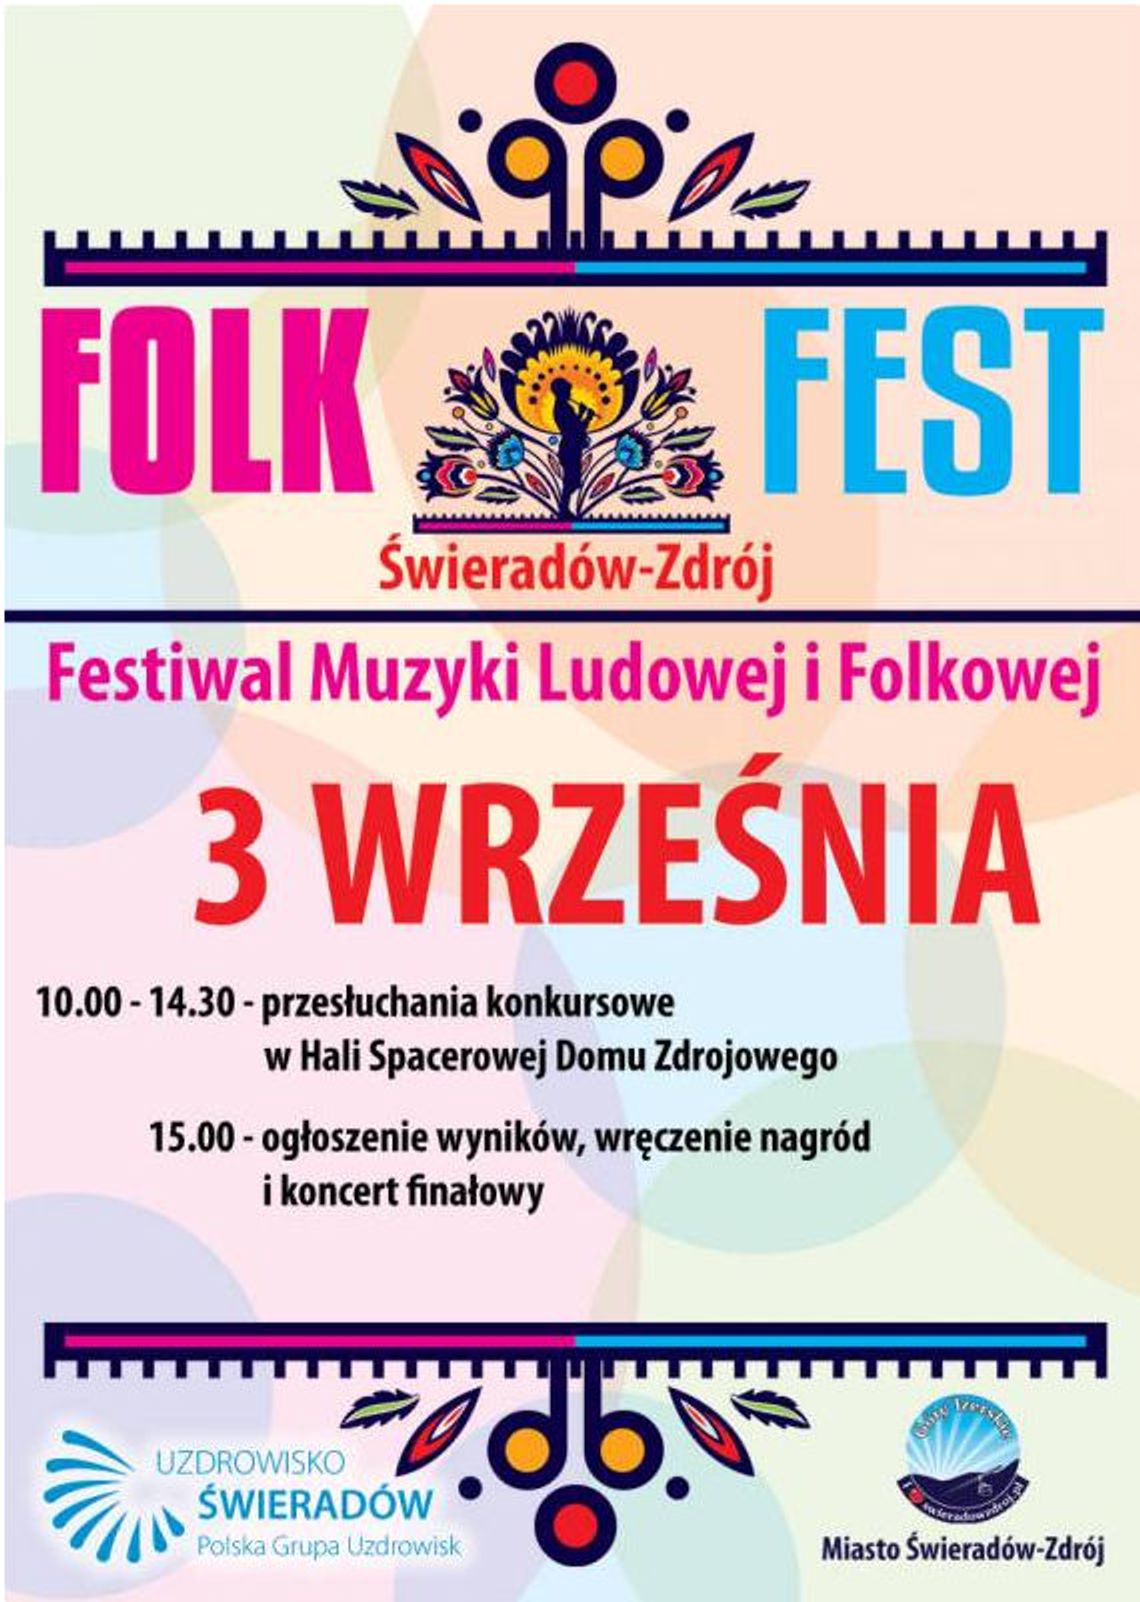 FOLK FEST Świeradów-Zdrój 2016 - III edycja